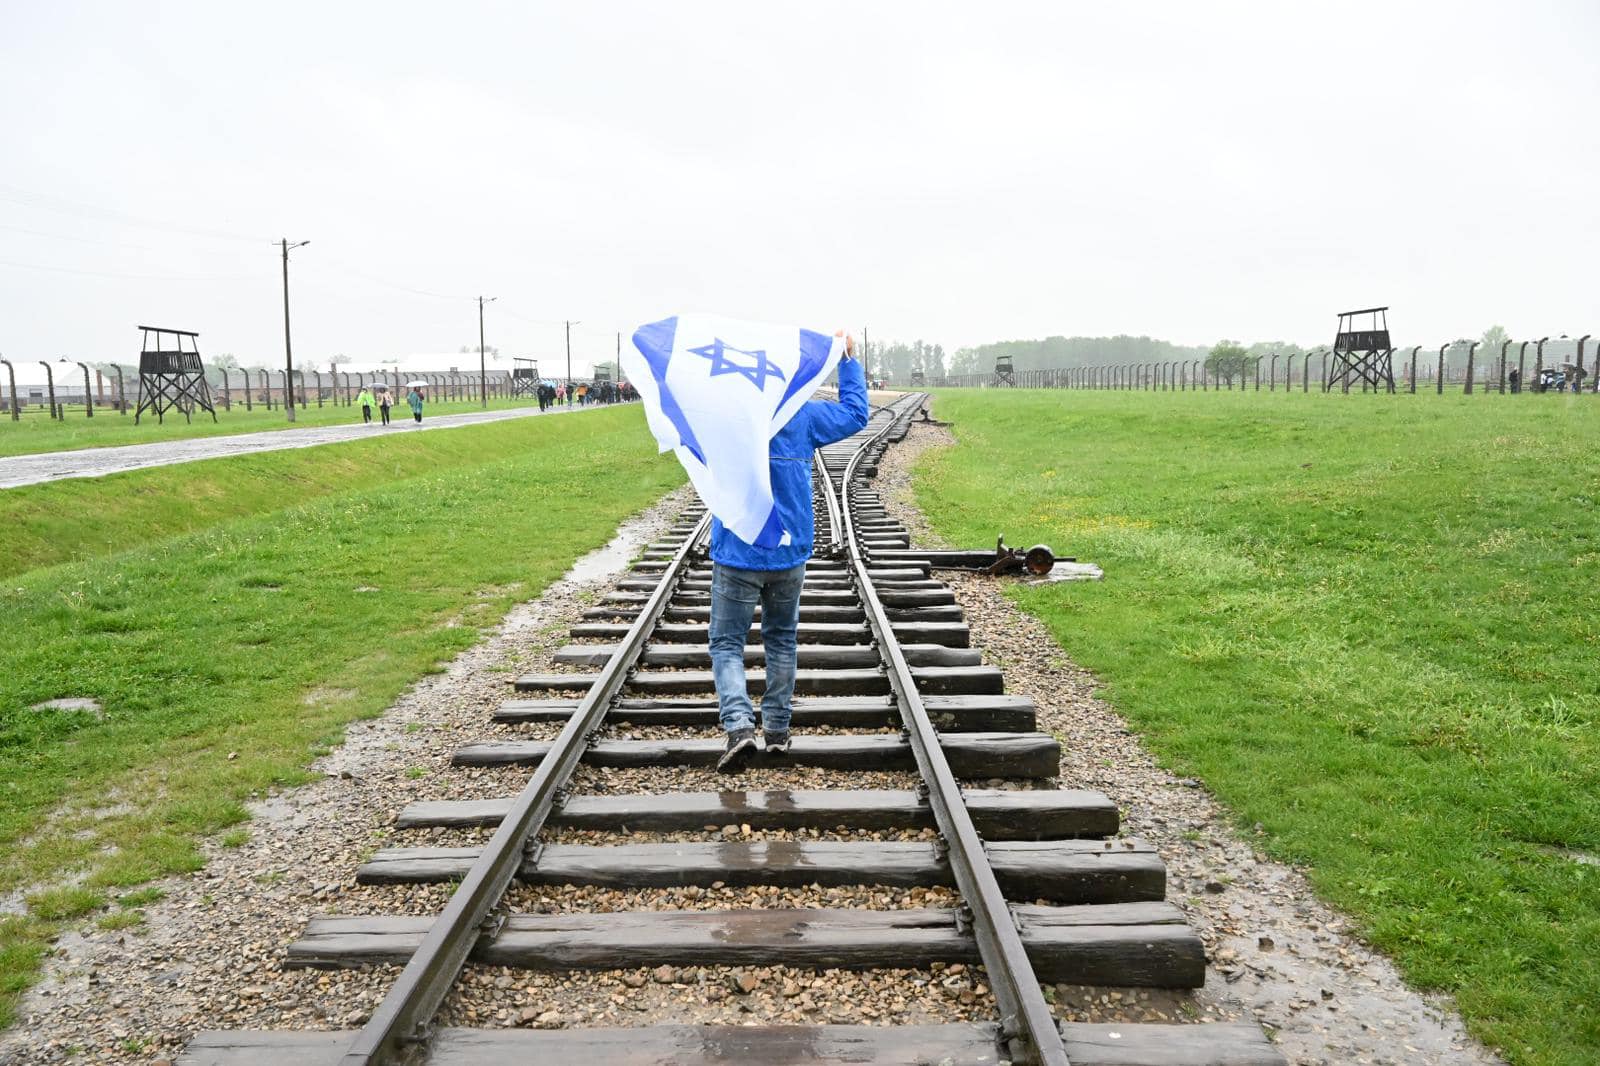 פוסעים על פסי הרכבת המובילים לאושוויץ תוך הנפת דגל ישראל